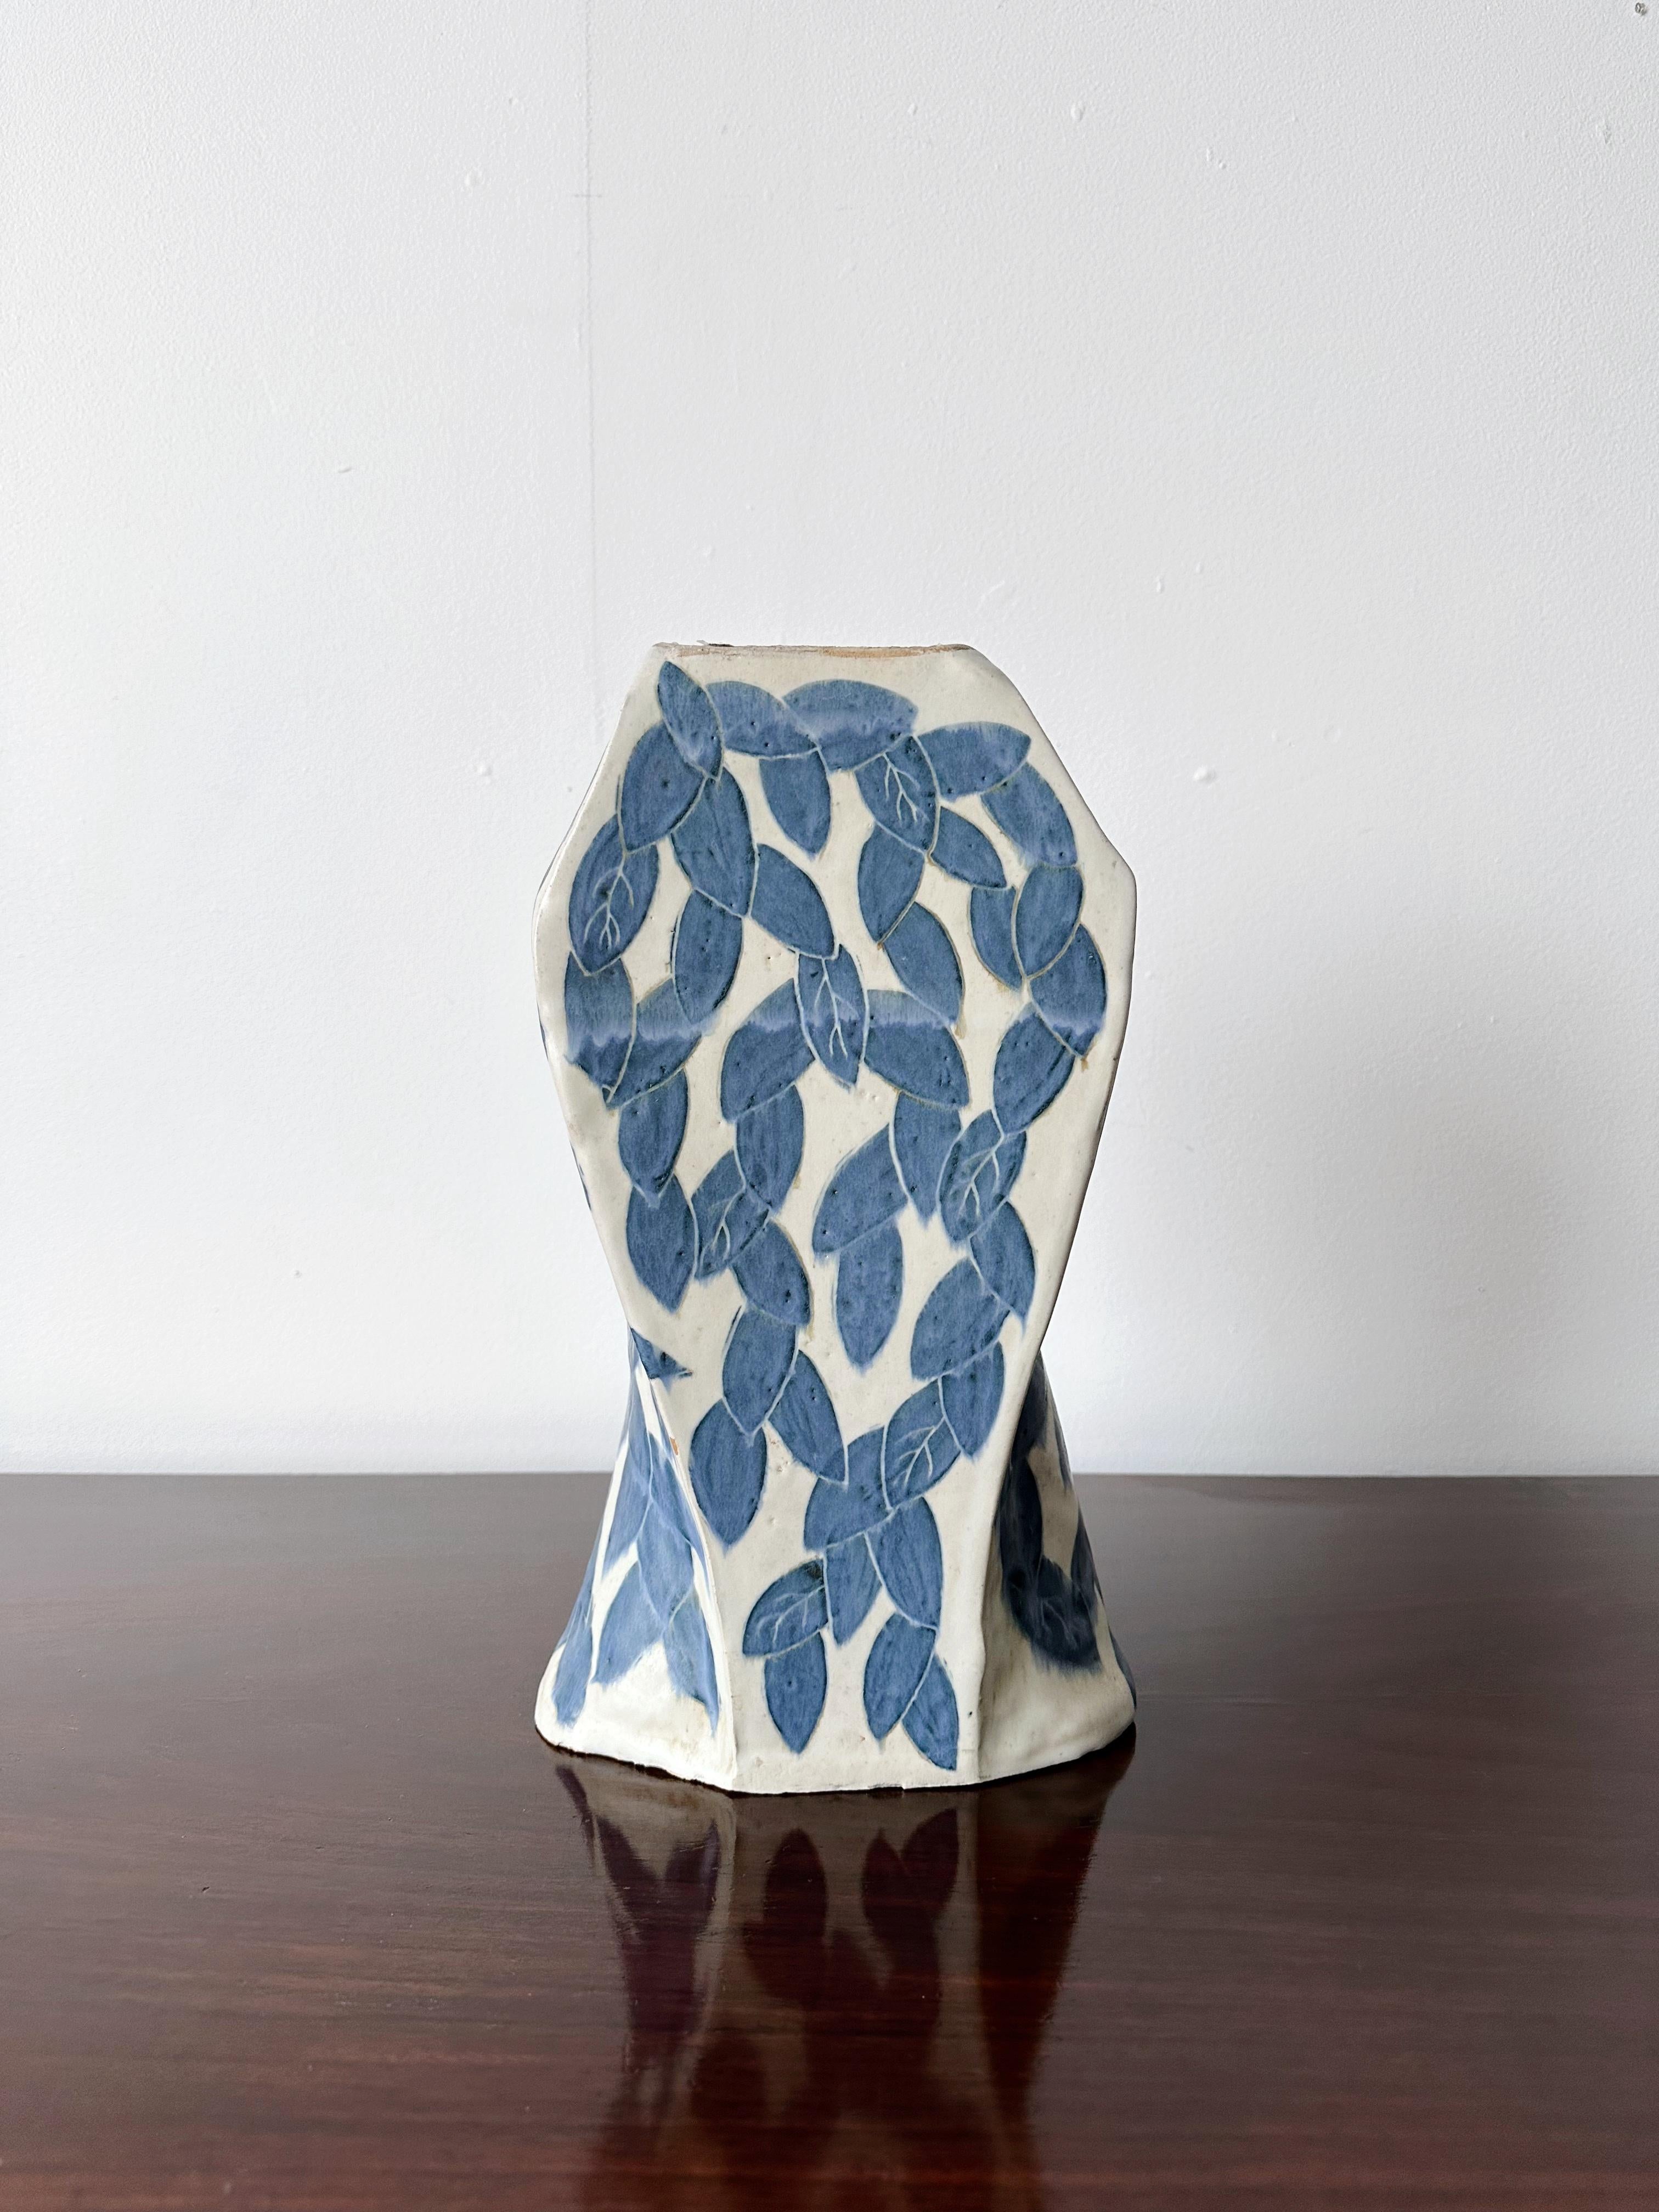 Grand vase en céramique de style méditerranéen imprimé feuilles blanches et bleues

// u2028

Dimensions :u2028
7 